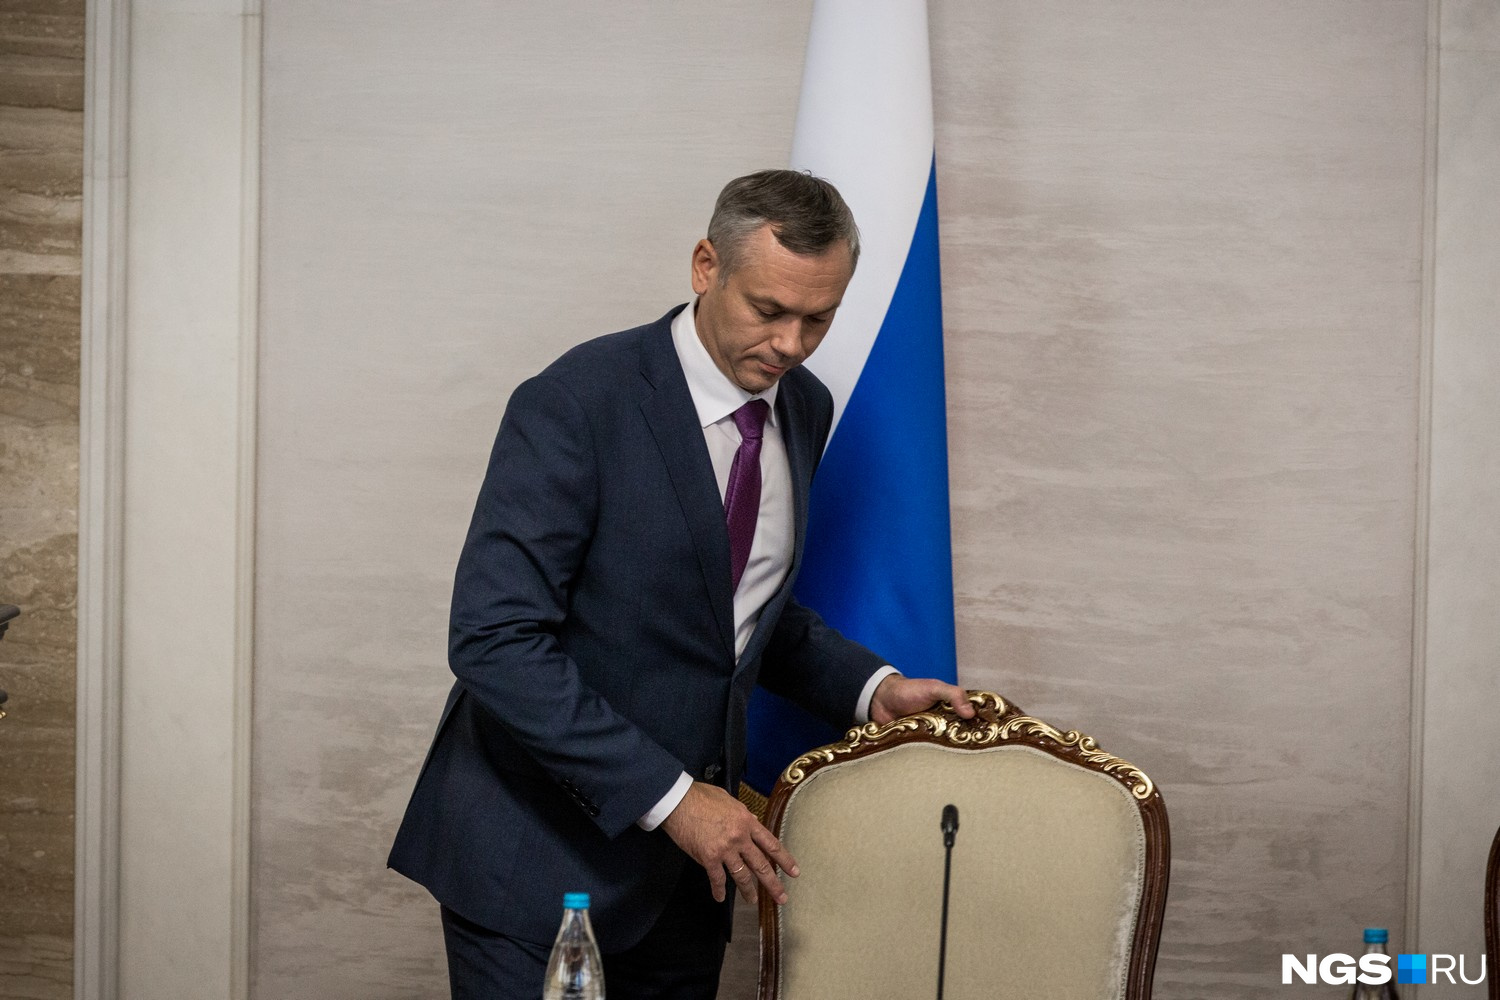 Бывший мэр Вологды Андрей Травников стал врио губернатора Новосибирской области неожиданно для всей местной элиты